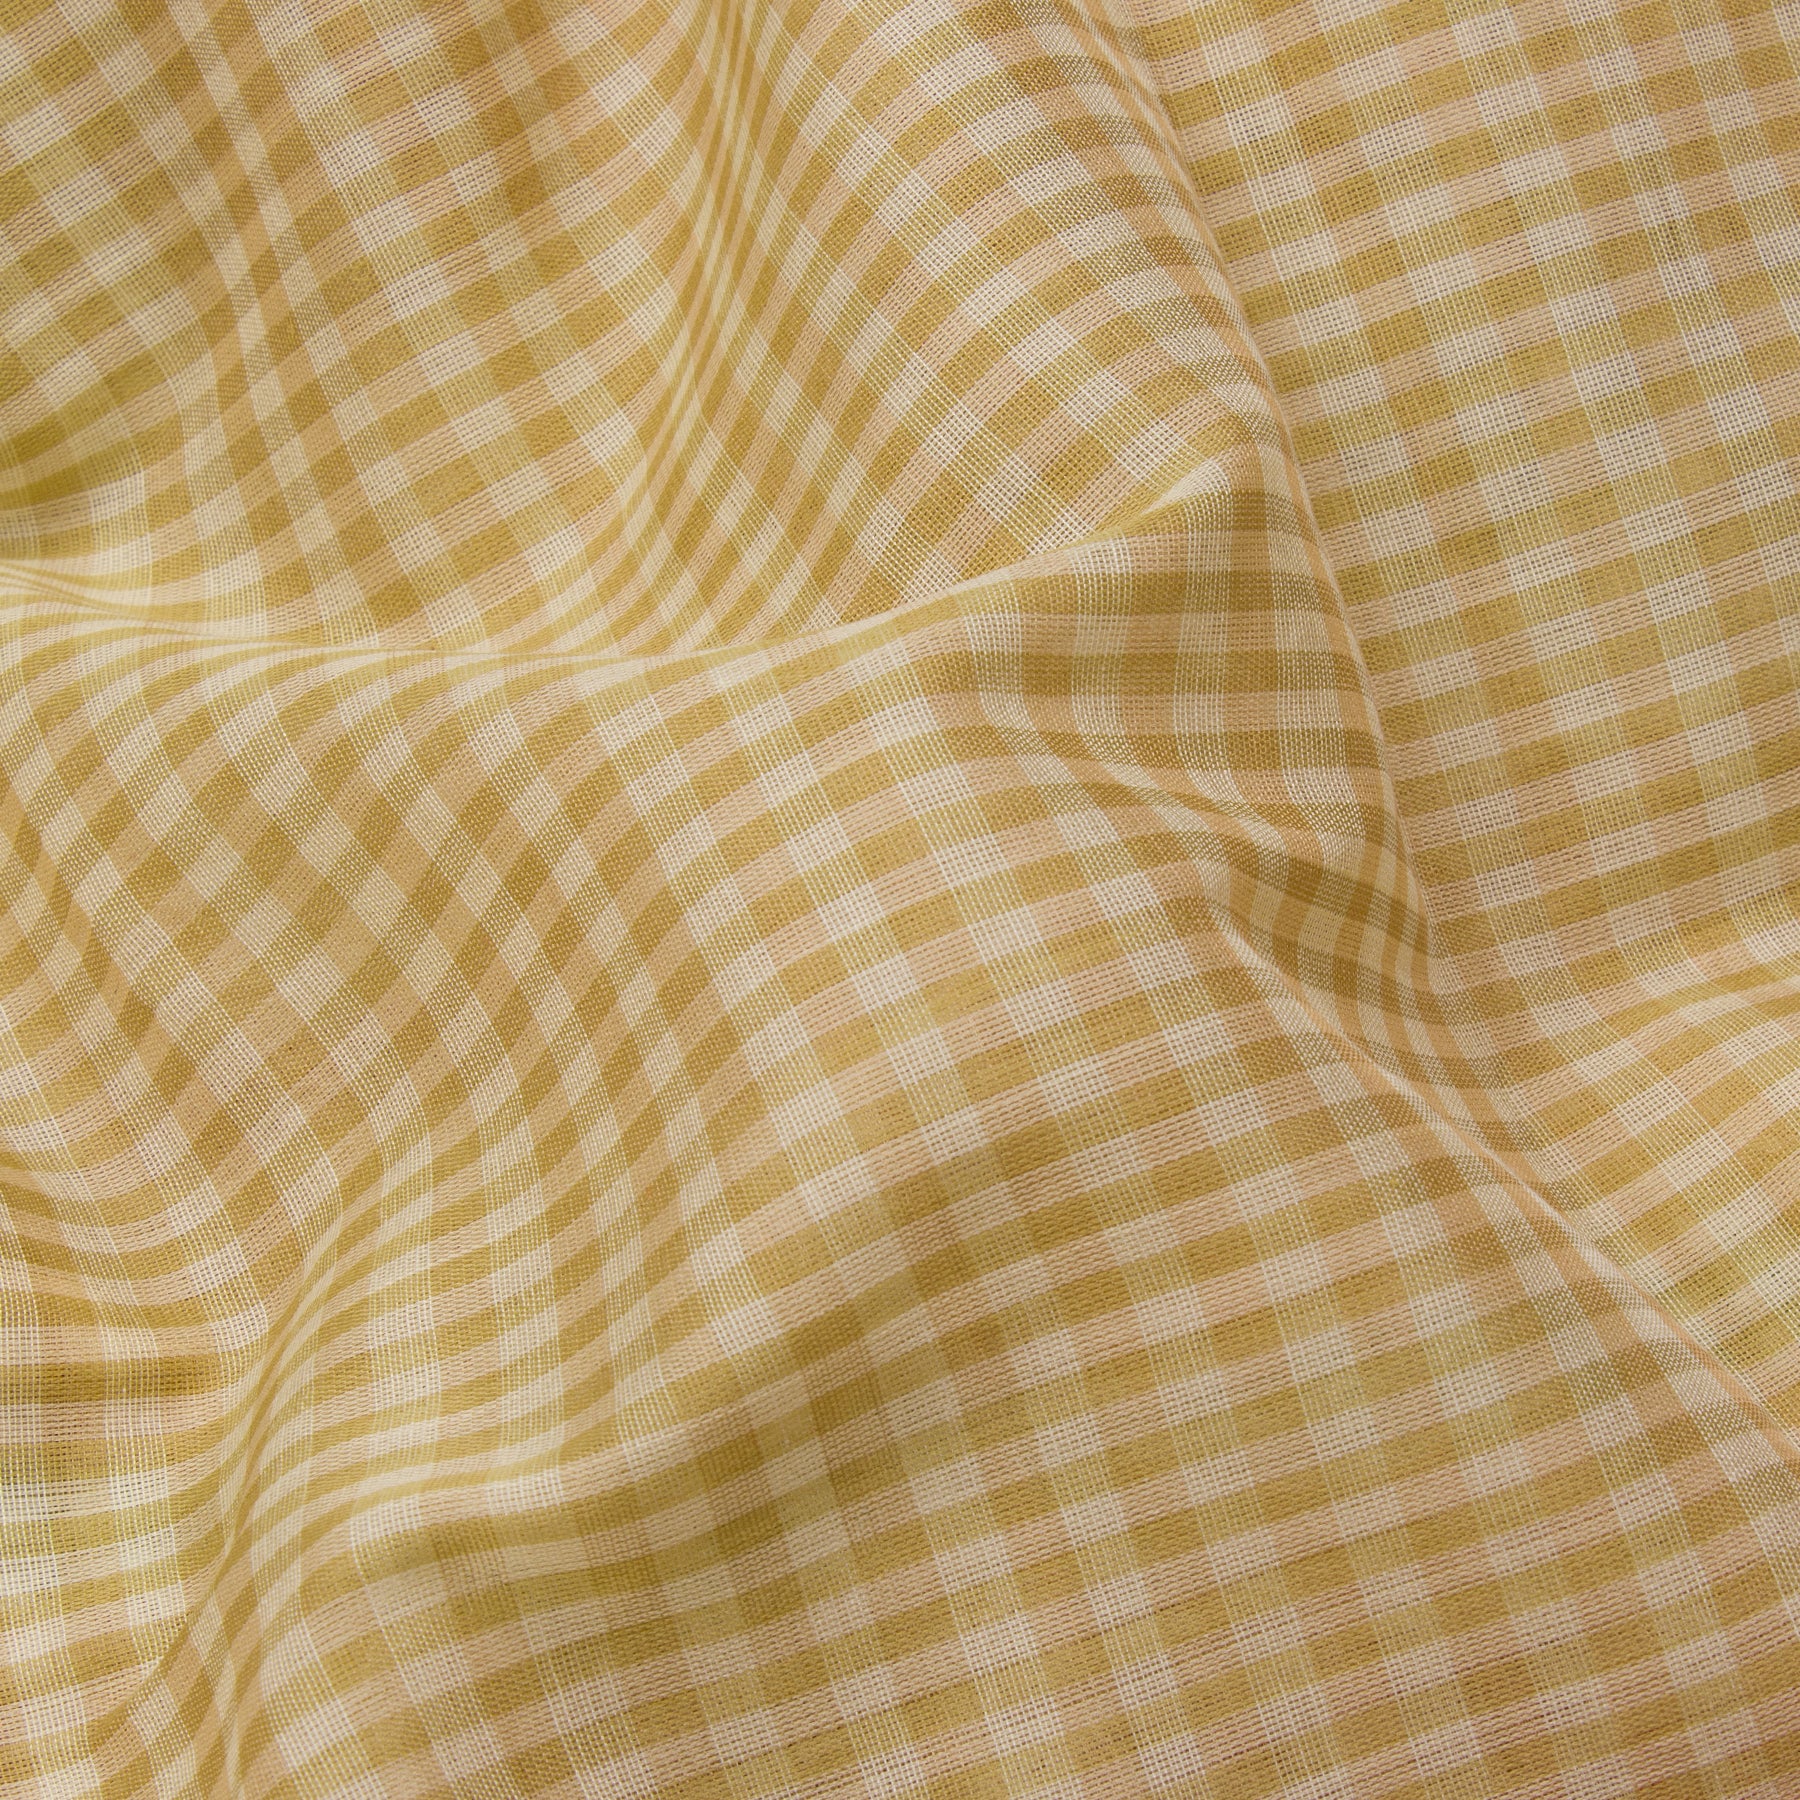 Kanakavalli Gadwal Silk/Cotton Sari 23-604-HS005-13363 - Fabric View